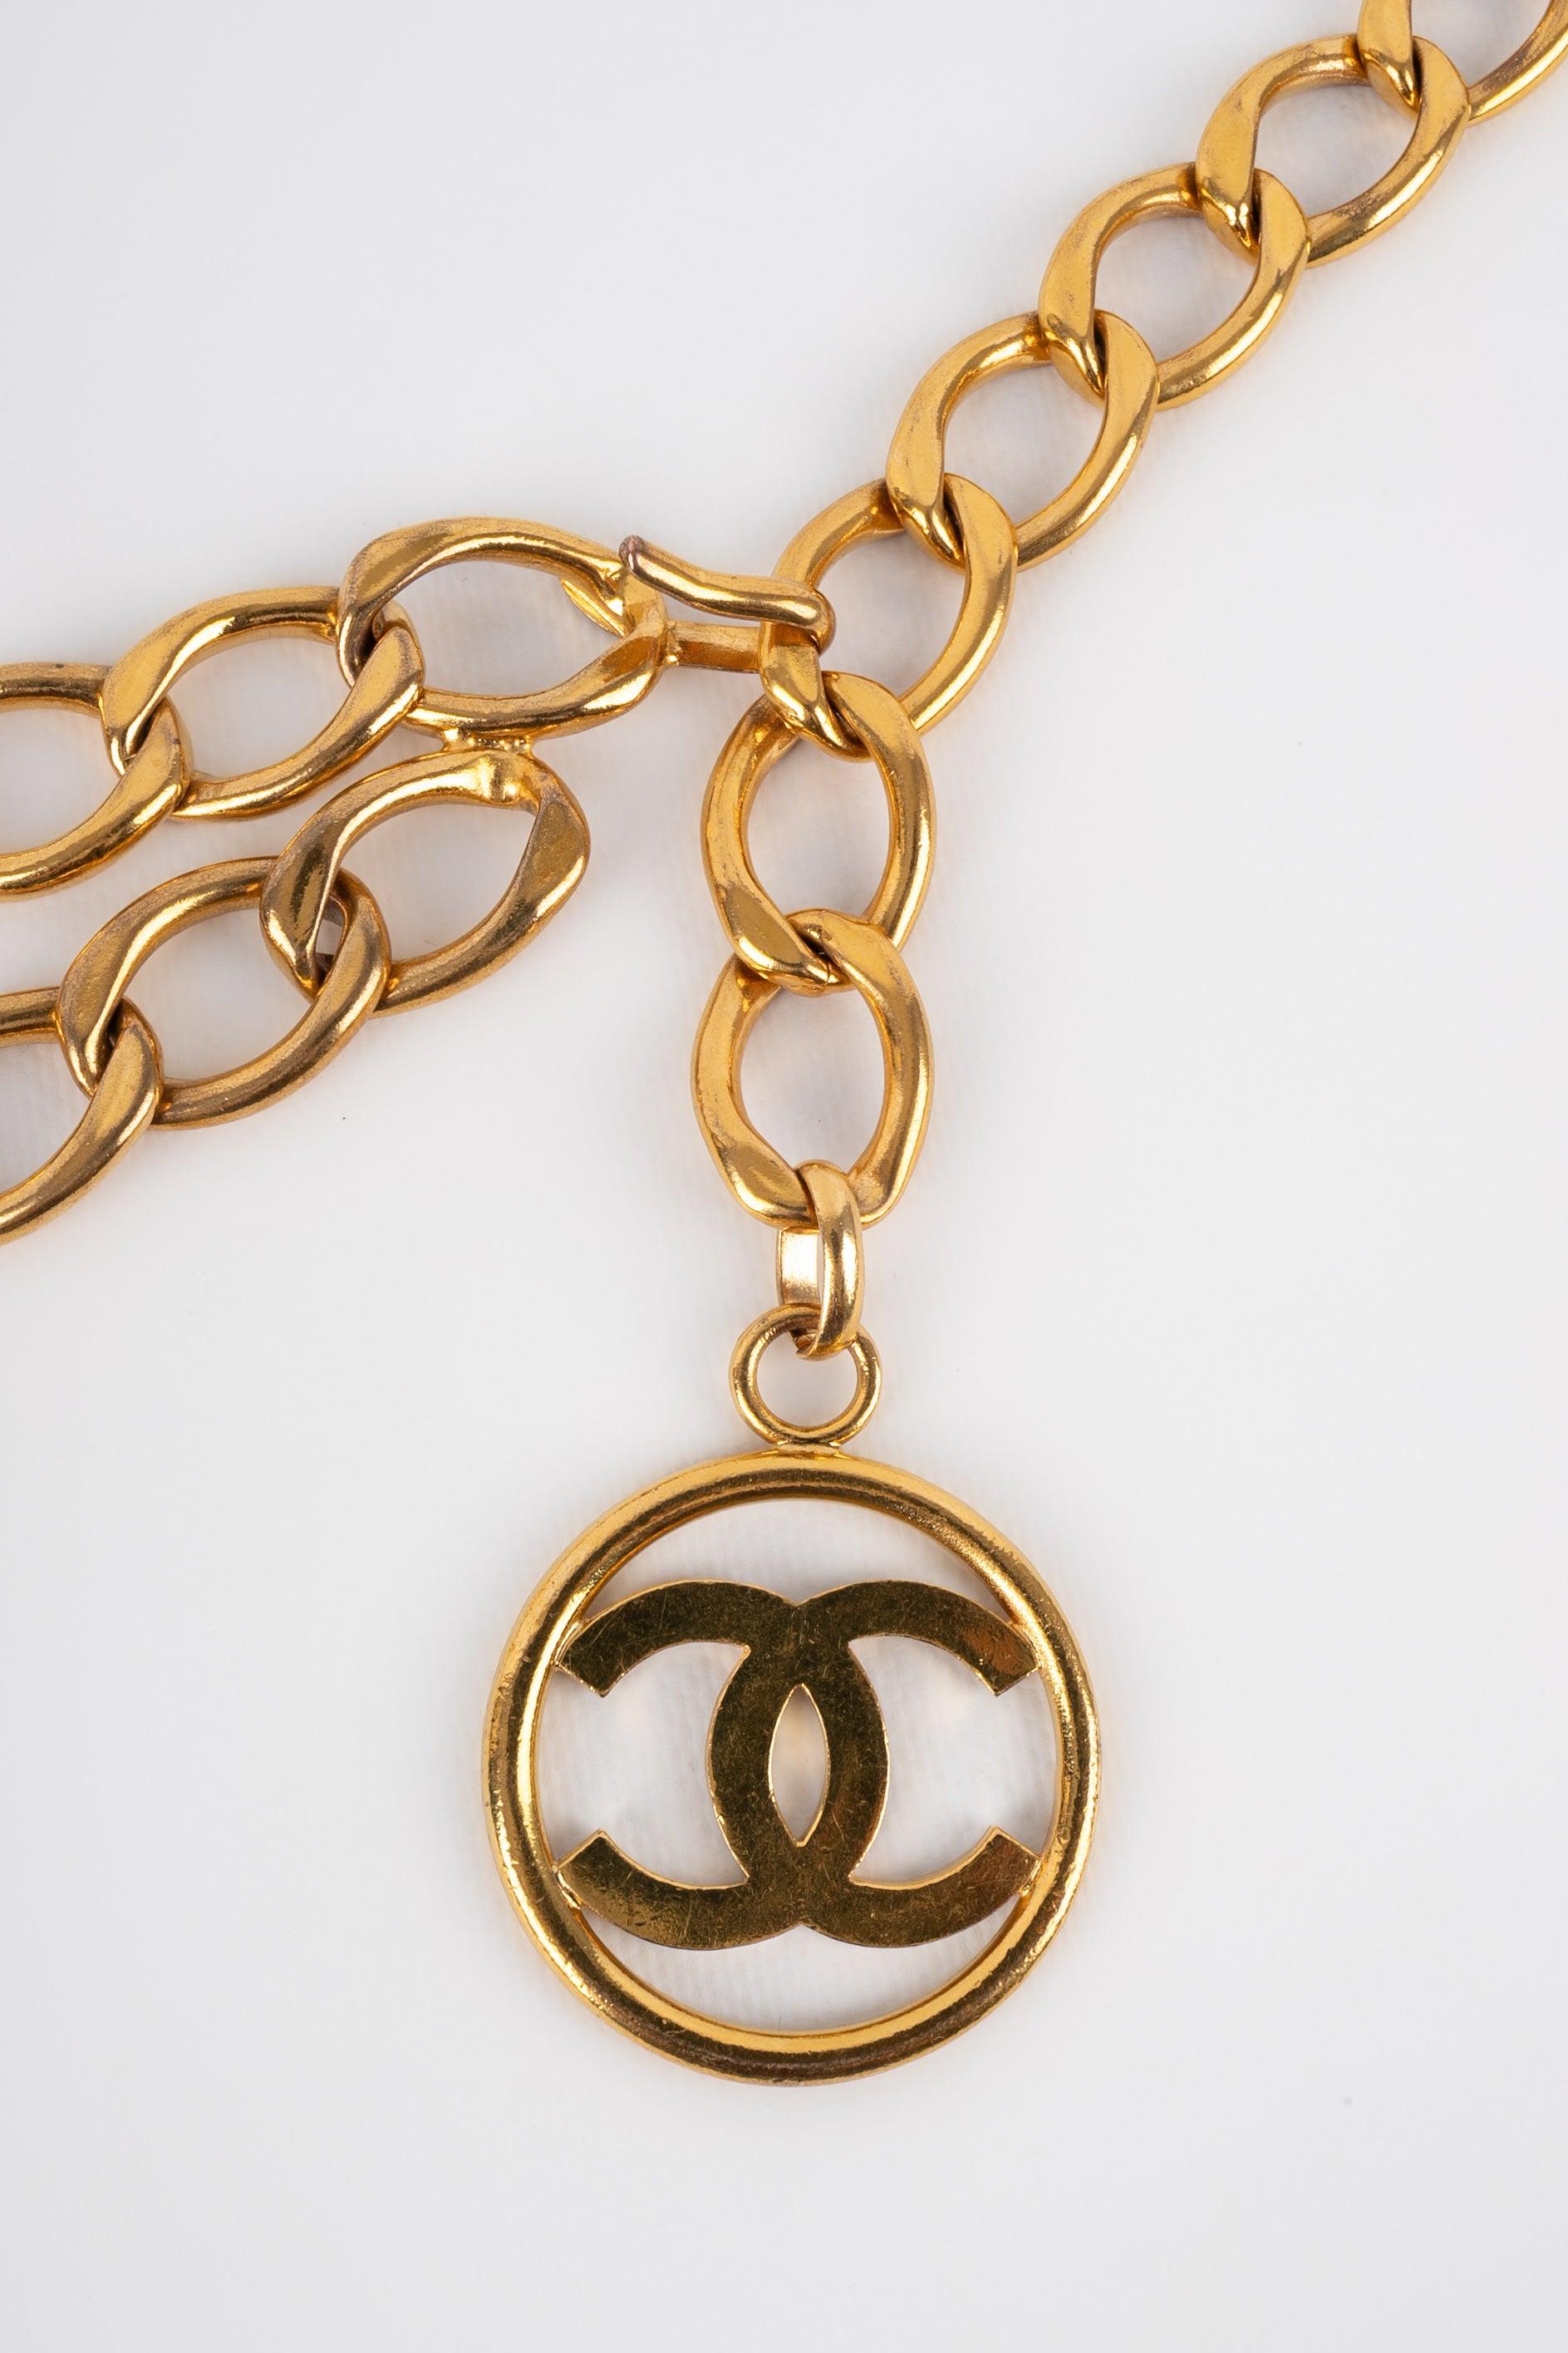 Chanel Golden Metal Belt, 2009 For Sale 3